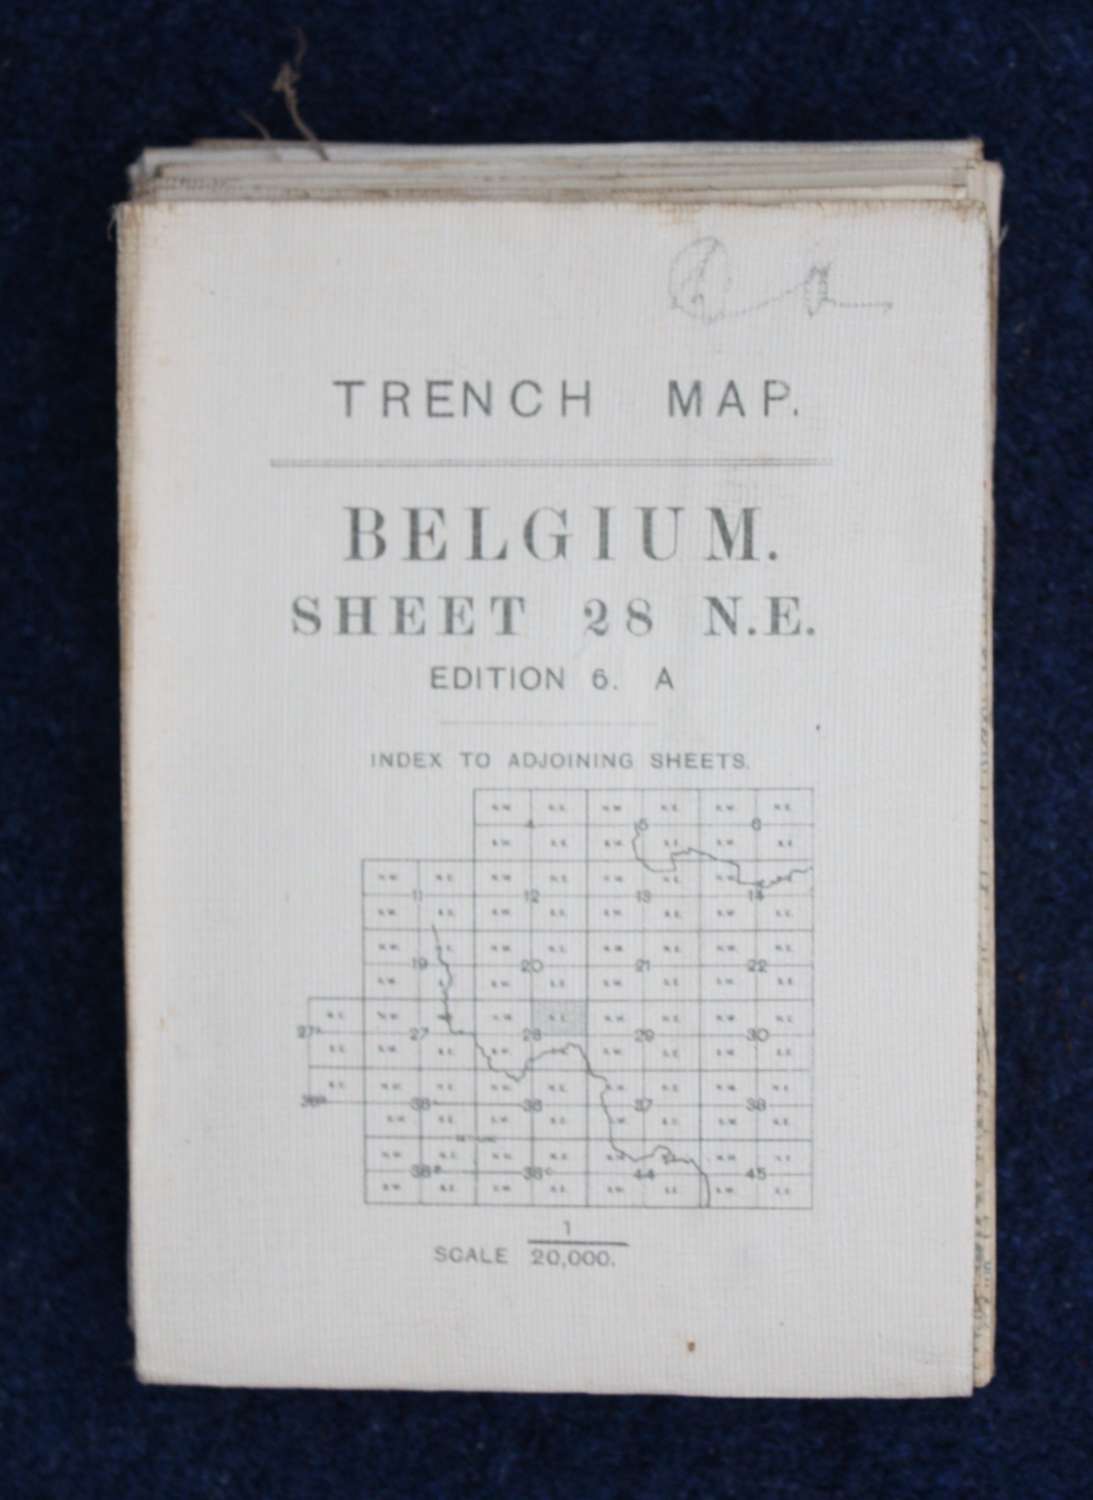 WW1 British Army Trench Map Passendaele Belgium 28 NE 3rd July 1917